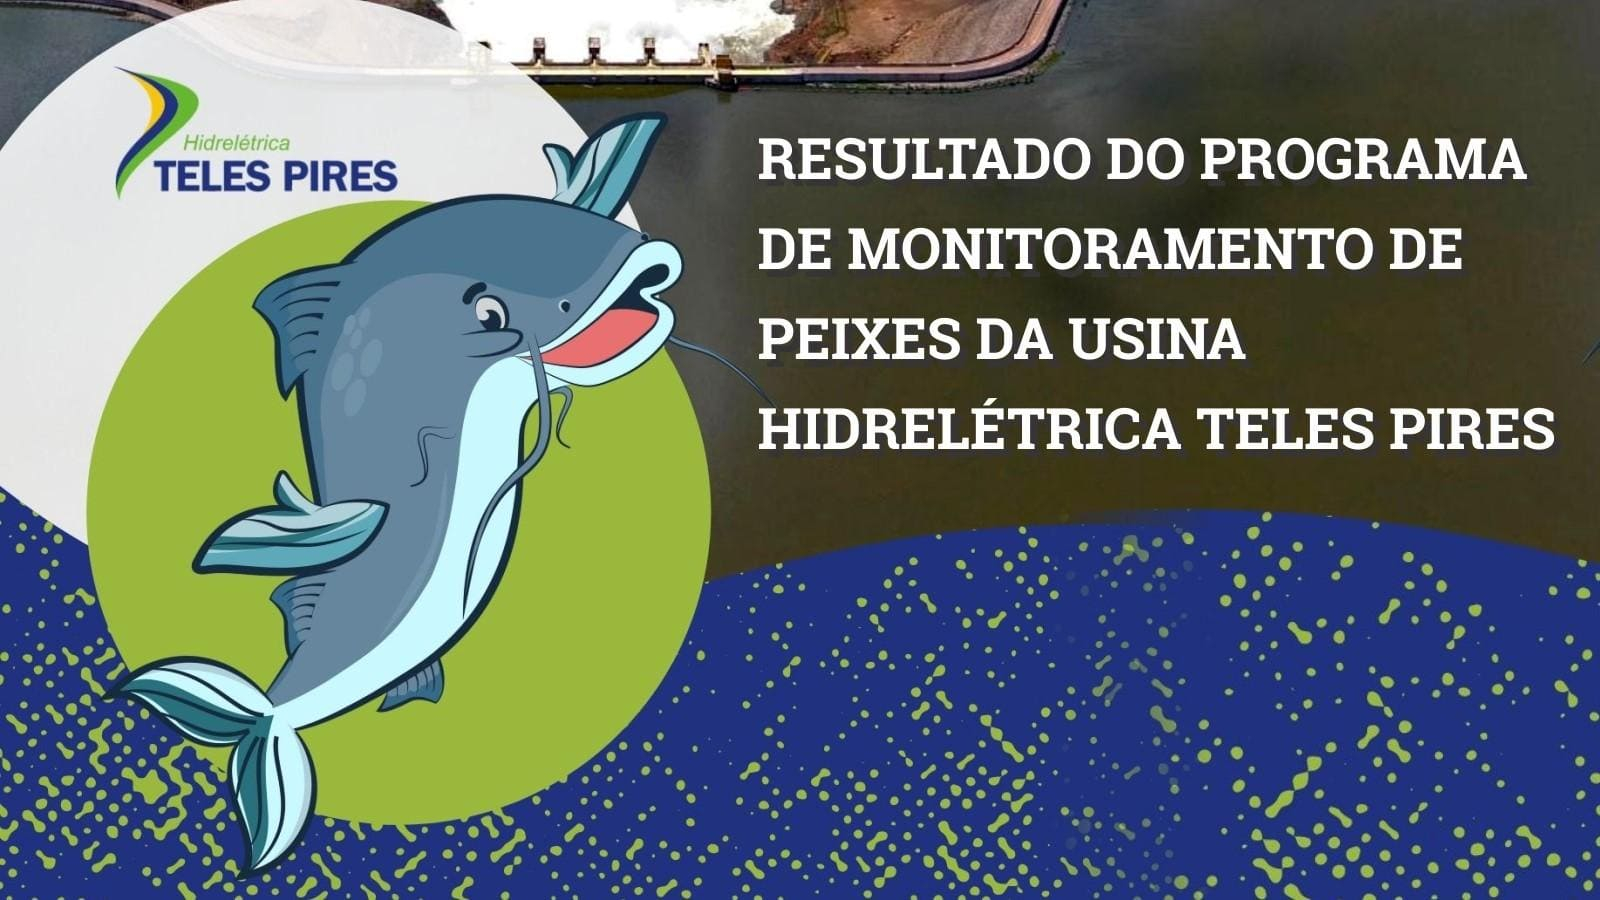 Companhia Hidrelétrica Teles Pires realiza campanha educativa sobre o monitoramento de peixes na região do reservatório da usina